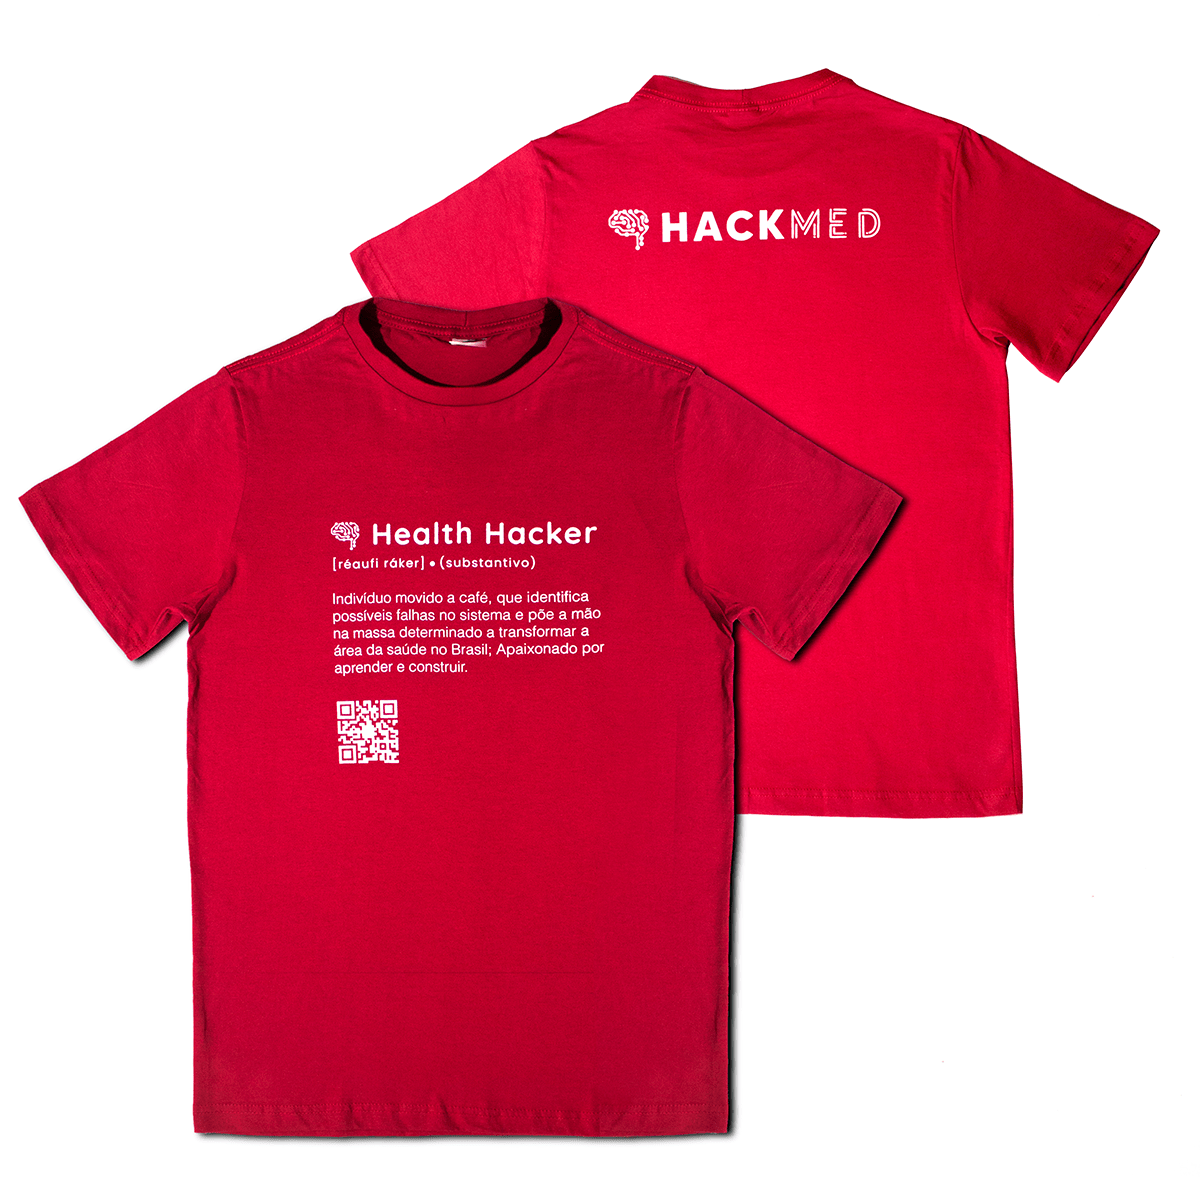 As Camisetas Hacker do Brasil